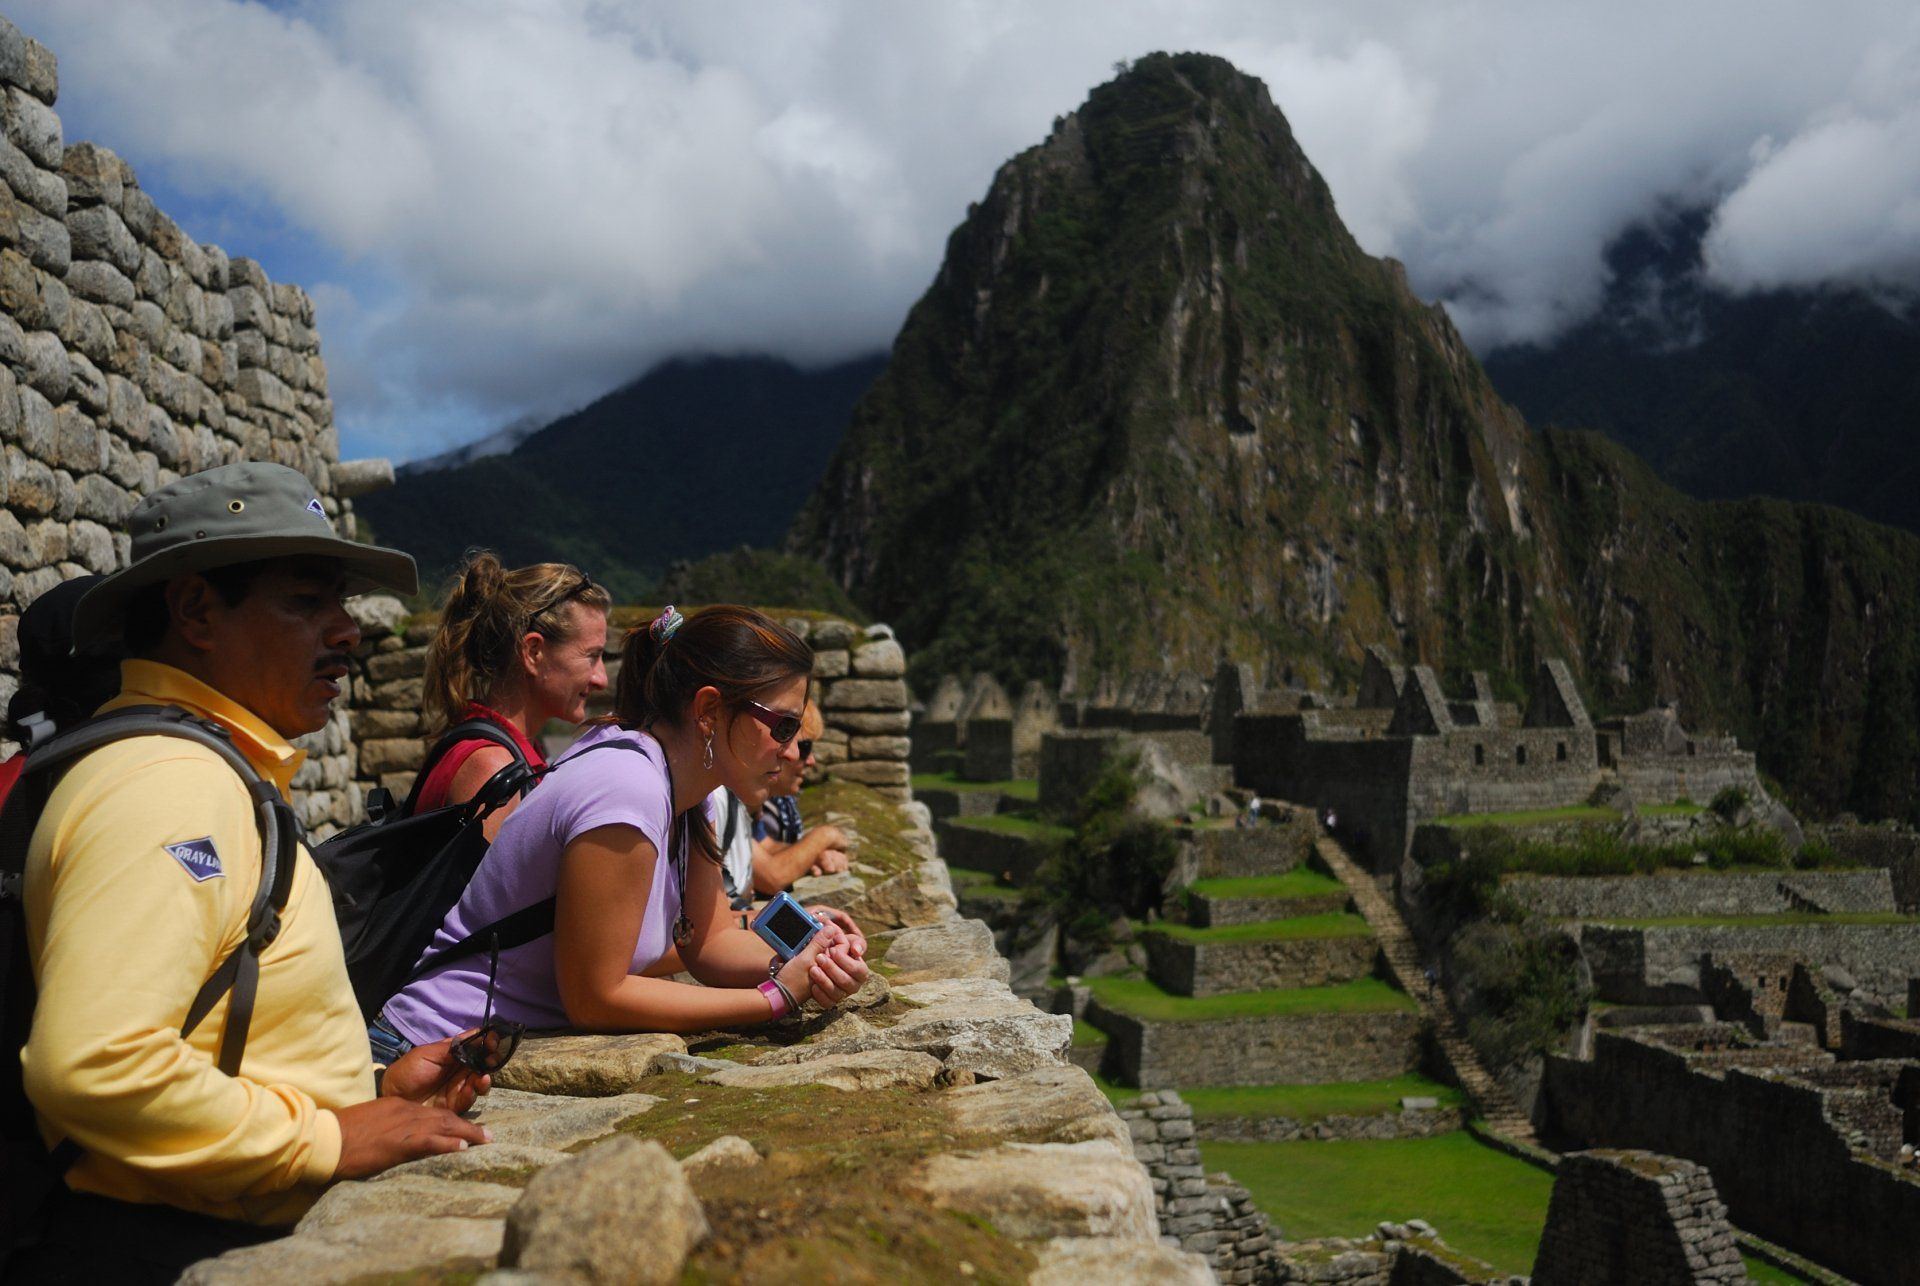 Guías Expertos te acompañarán y te harán conocer aspectos ocultos de Machu Picchu.